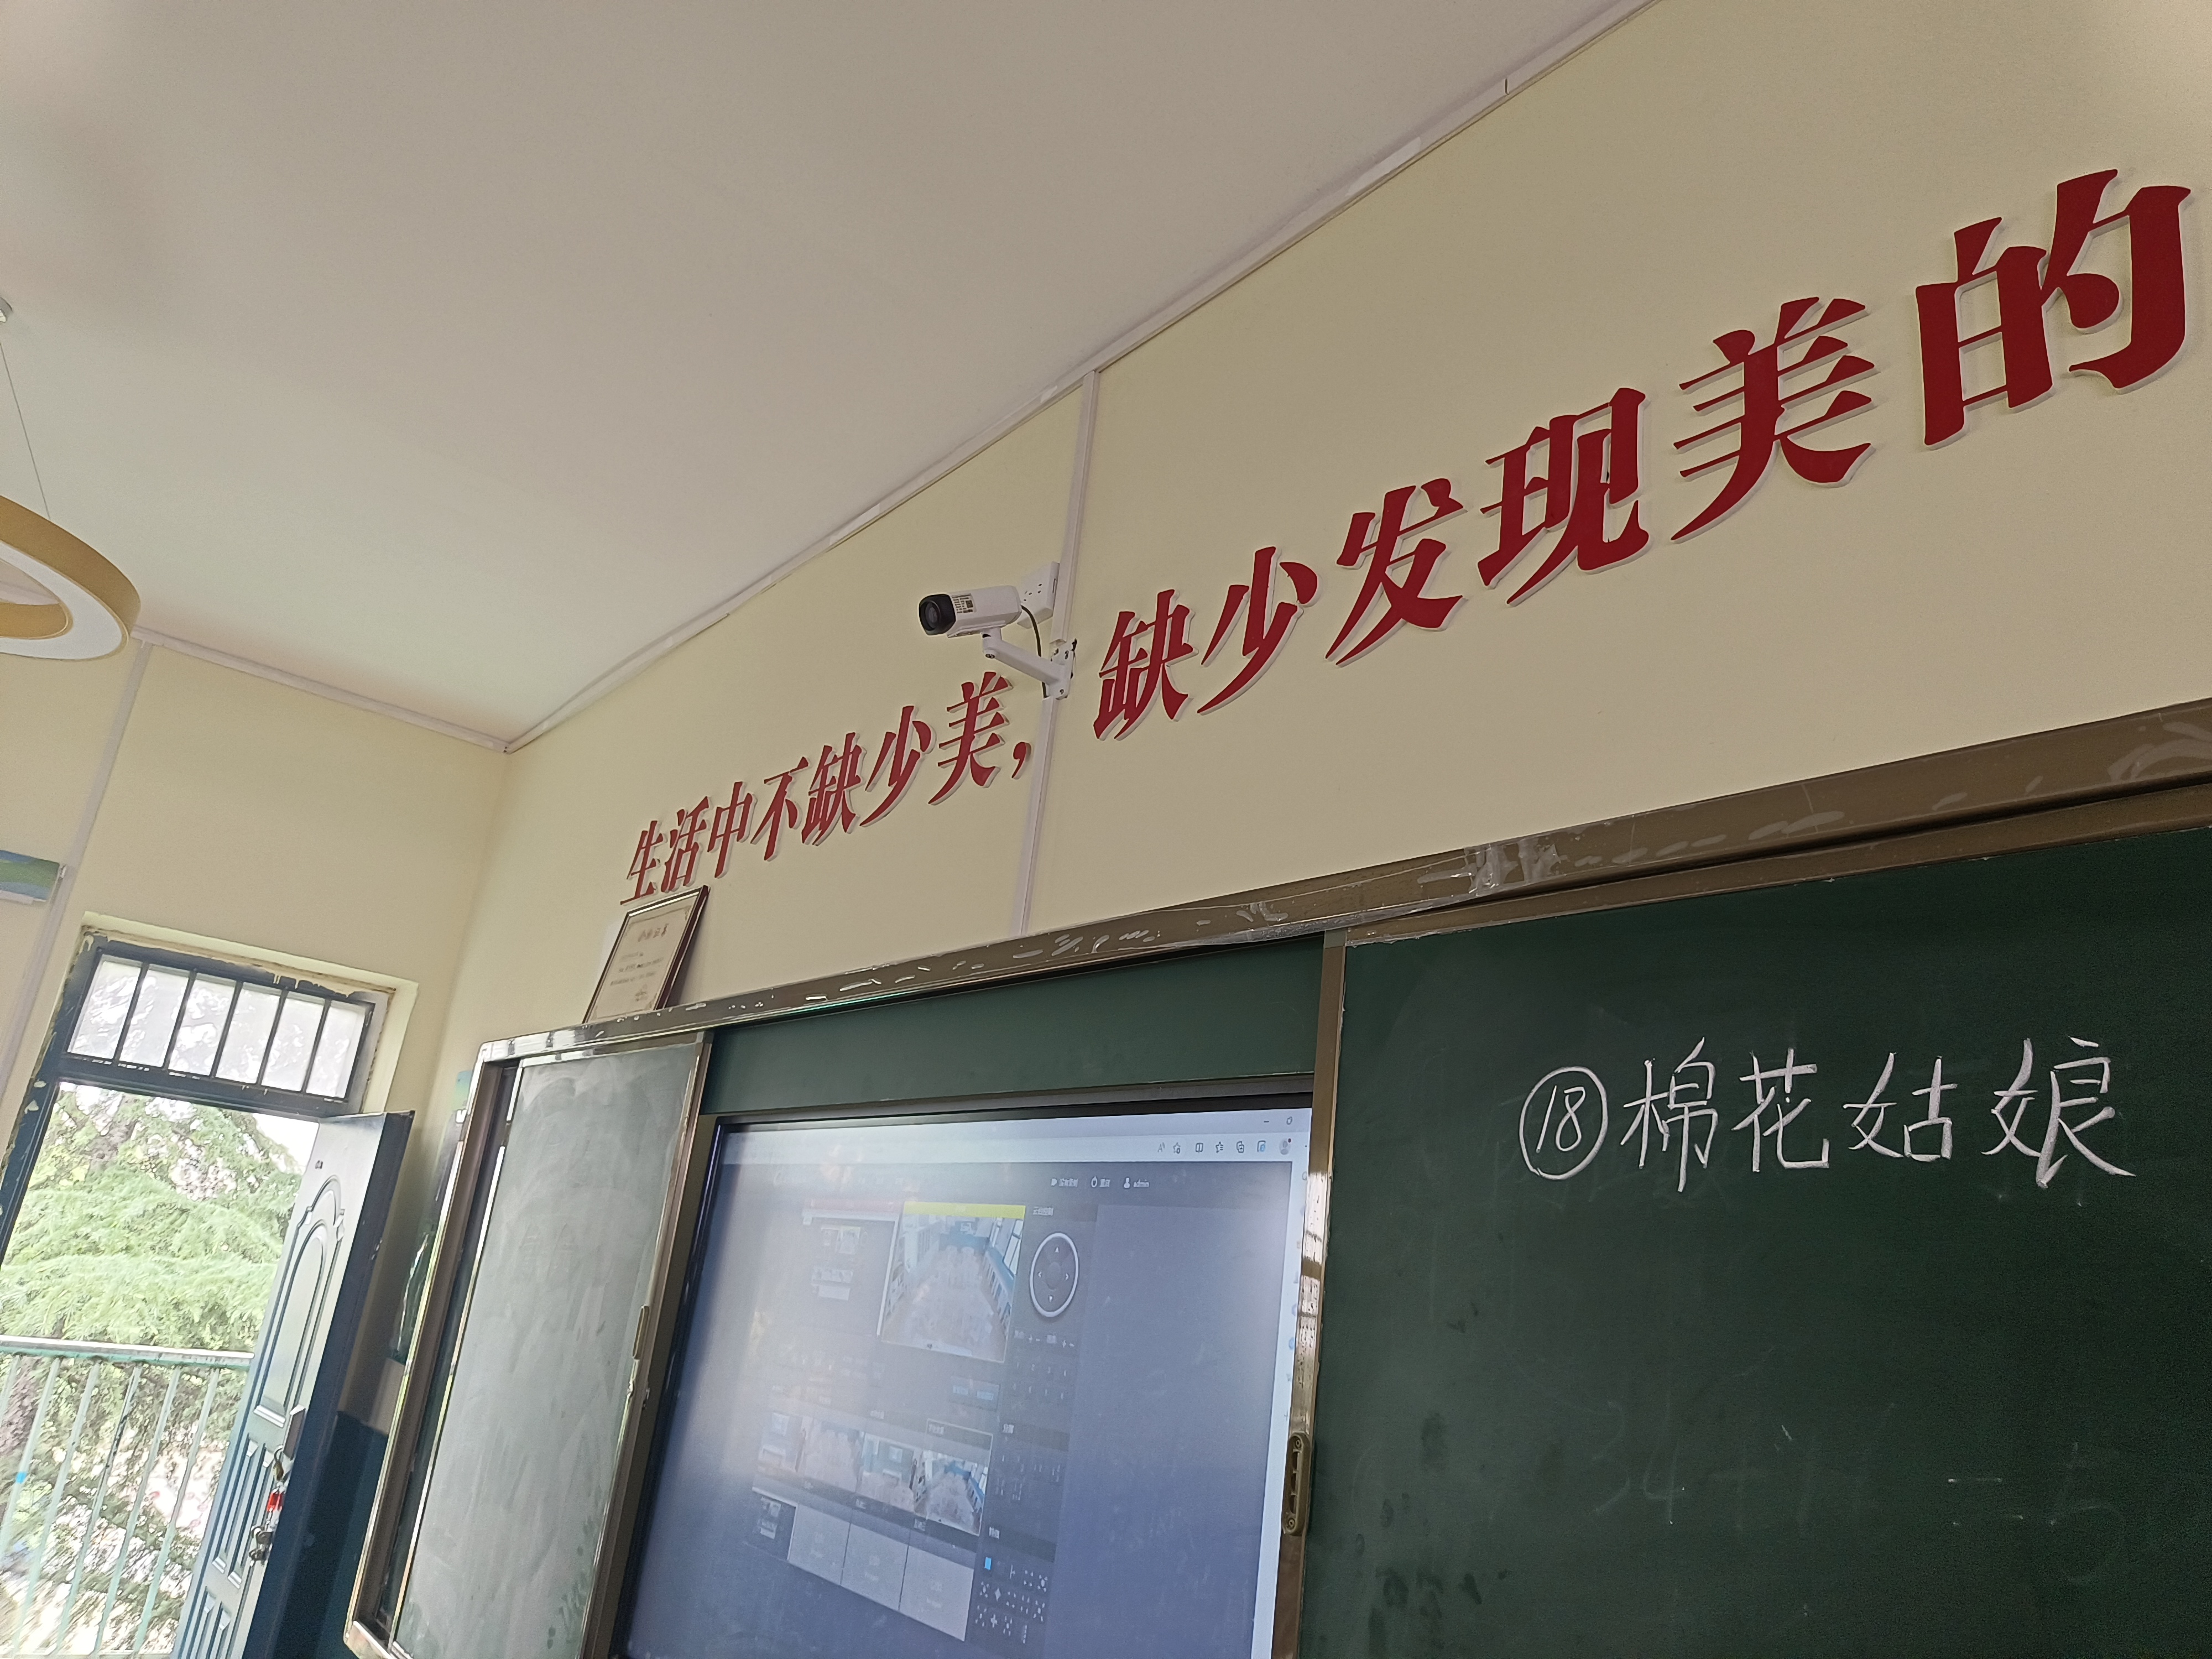 河南汝阳县教育局常态化录播投入使用(图4)